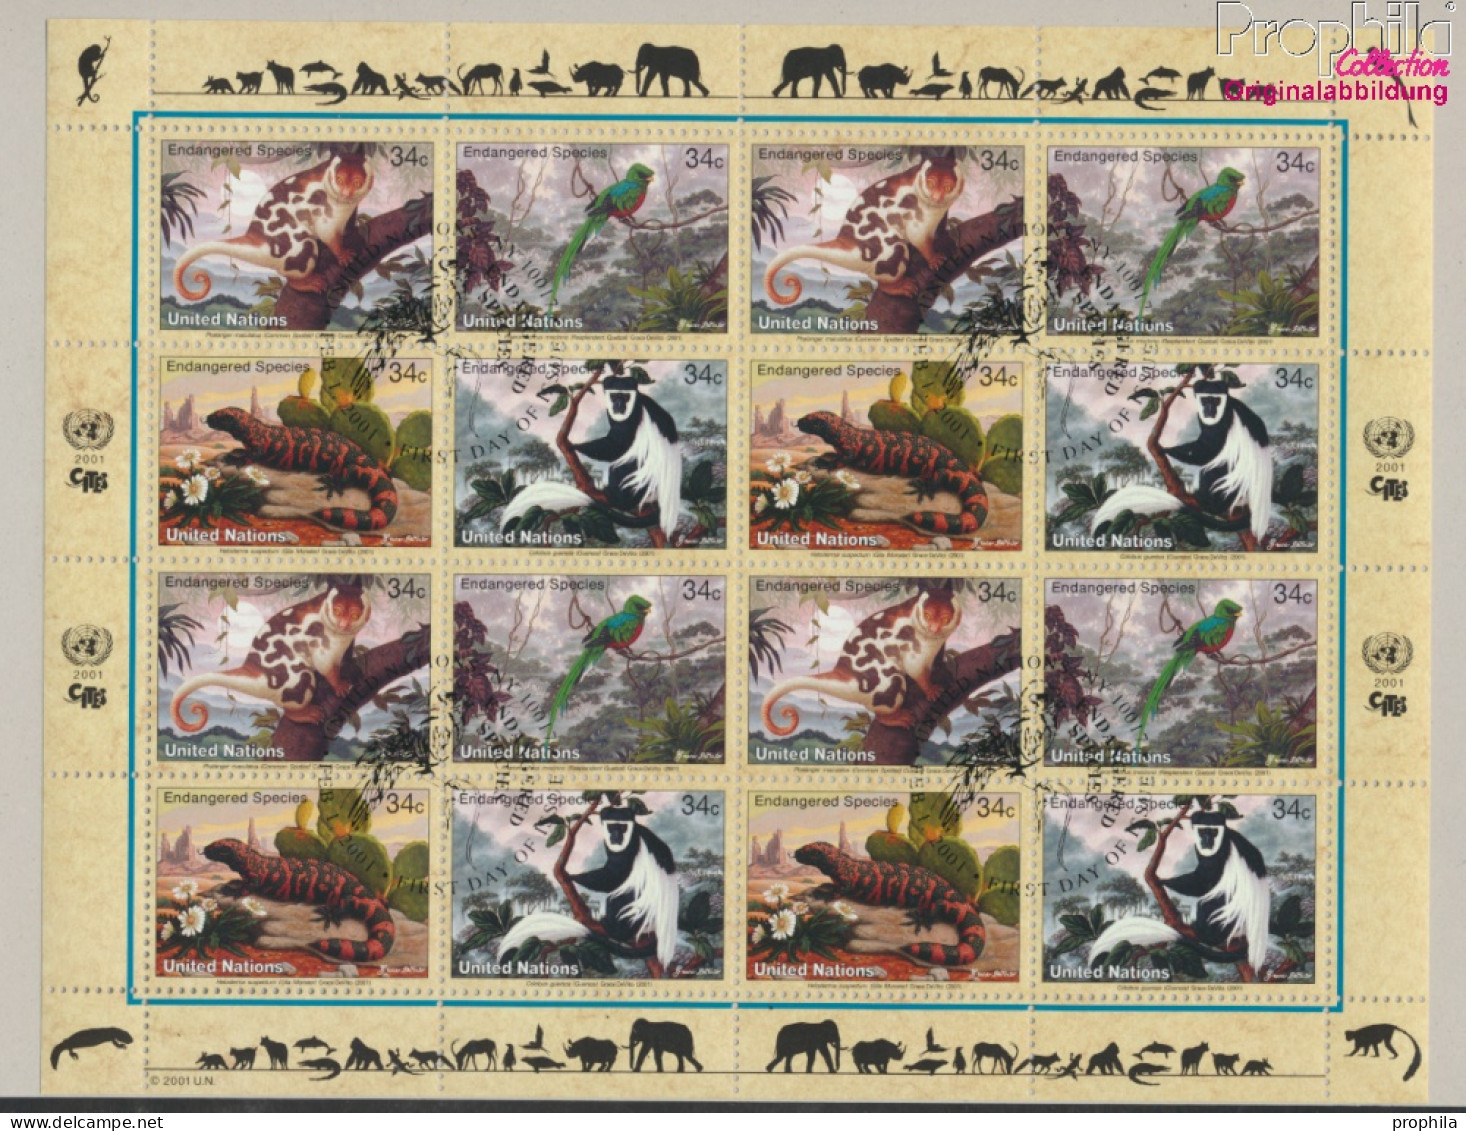 UNO - New York 856-859Klb Kleinbogen (kompl.Ausg.) Gestempelt 2001 Gefährdete Arten: Fauna (10050684 - Used Stamps